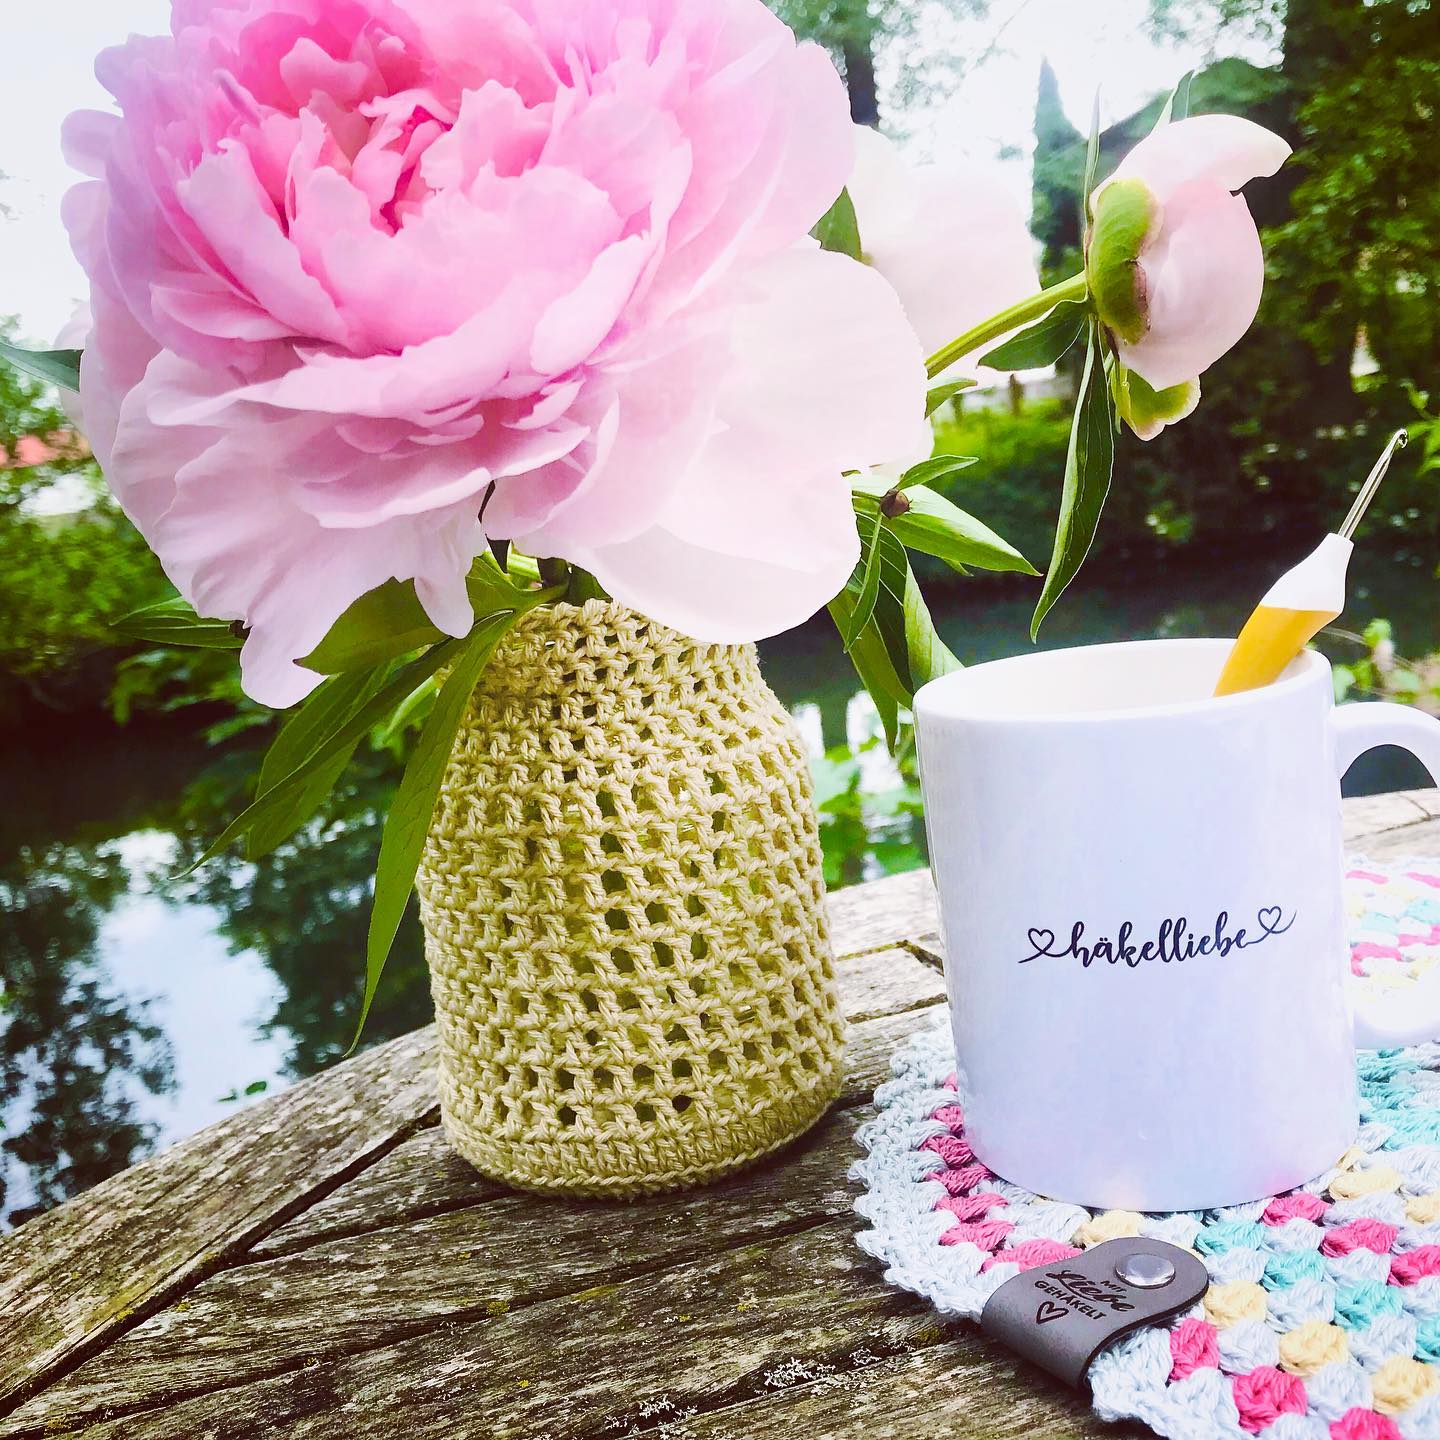 Werbung/Markennennung
🌸 noch schnell ein Gruß von meinem Gartentisch, bevor der nächste Regen kommt… 🌸 Mögt Ihr Pfingstrosen auch so gerne? Diese großen Blüten sind doch einfach wunderschön und das umhäkelte Joghurtglas als Vase passt perfekt dazu! 🌸 ich freue mich auf einen kreativen #sommertischcal und bin gespannt, wie Eure Sommertische dann aussehen 🌸 
Tasse ‚Häkelliebe‘ von @woll_stil 🌸 Baumwollgarn ‚Catania‘ von @schachenmayr - erhältlich bei @maschebeimasche 🌸 Häkelnadel ‚Swing‘ von @addi_by_selter 🌸 Kunstleder-Label ‚Mit Liebe gehäkelt‘ von @stolzausholz 🌸 #häkeln #häkelnmachtglücklich #häkelliebe #diy #sommertisch #woll_stil #stolzausholz #addifriends #schachenmayr #schachenmayrcatania #pfingstrosen #pfingstrosenliebe